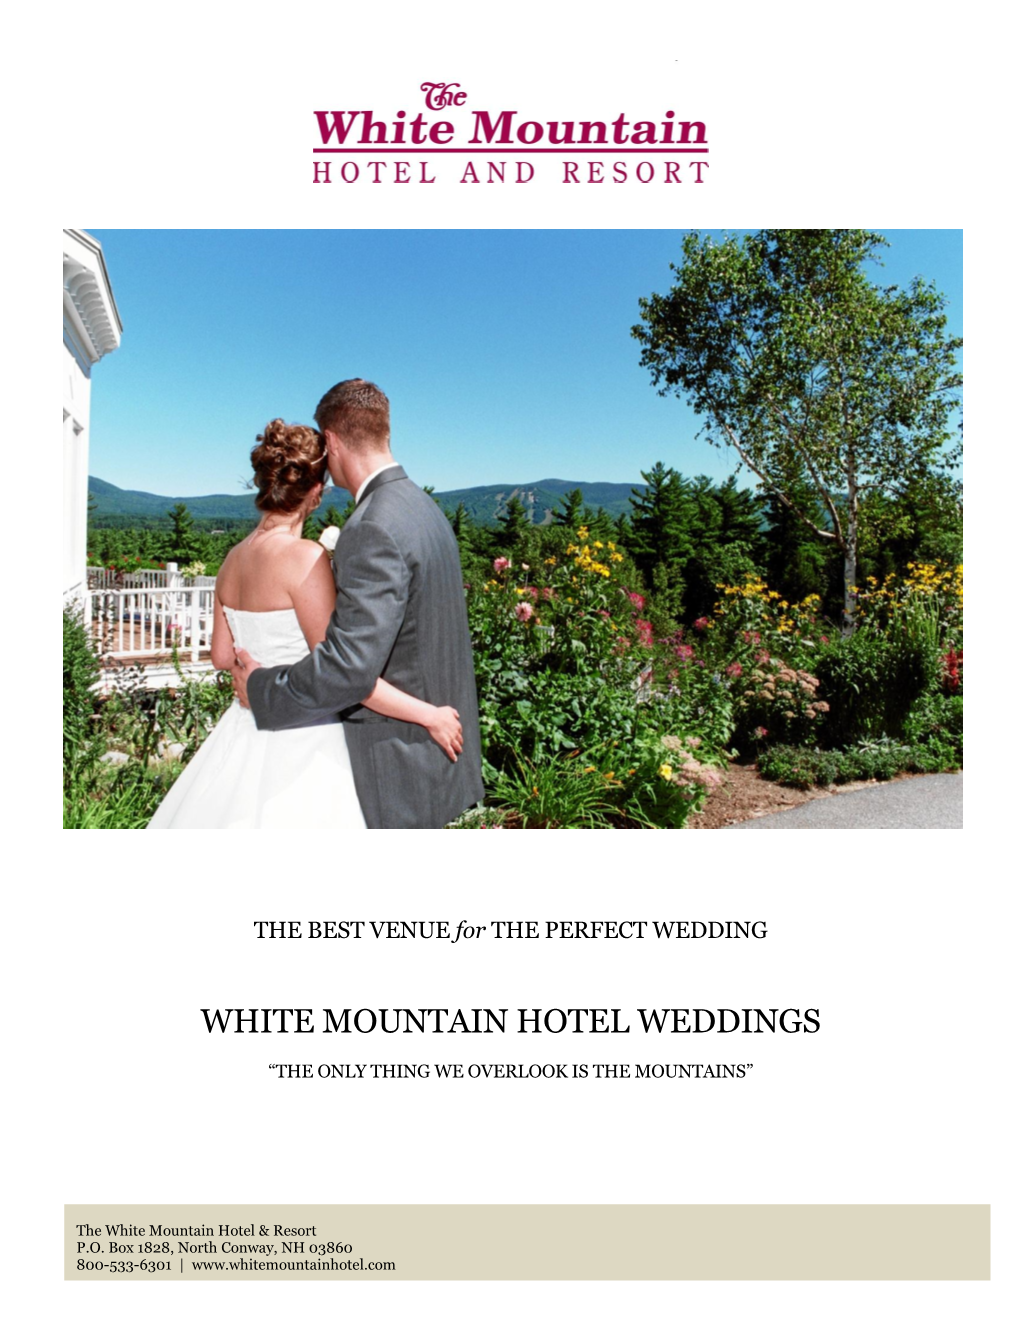 White Mountain Hotel Weddings